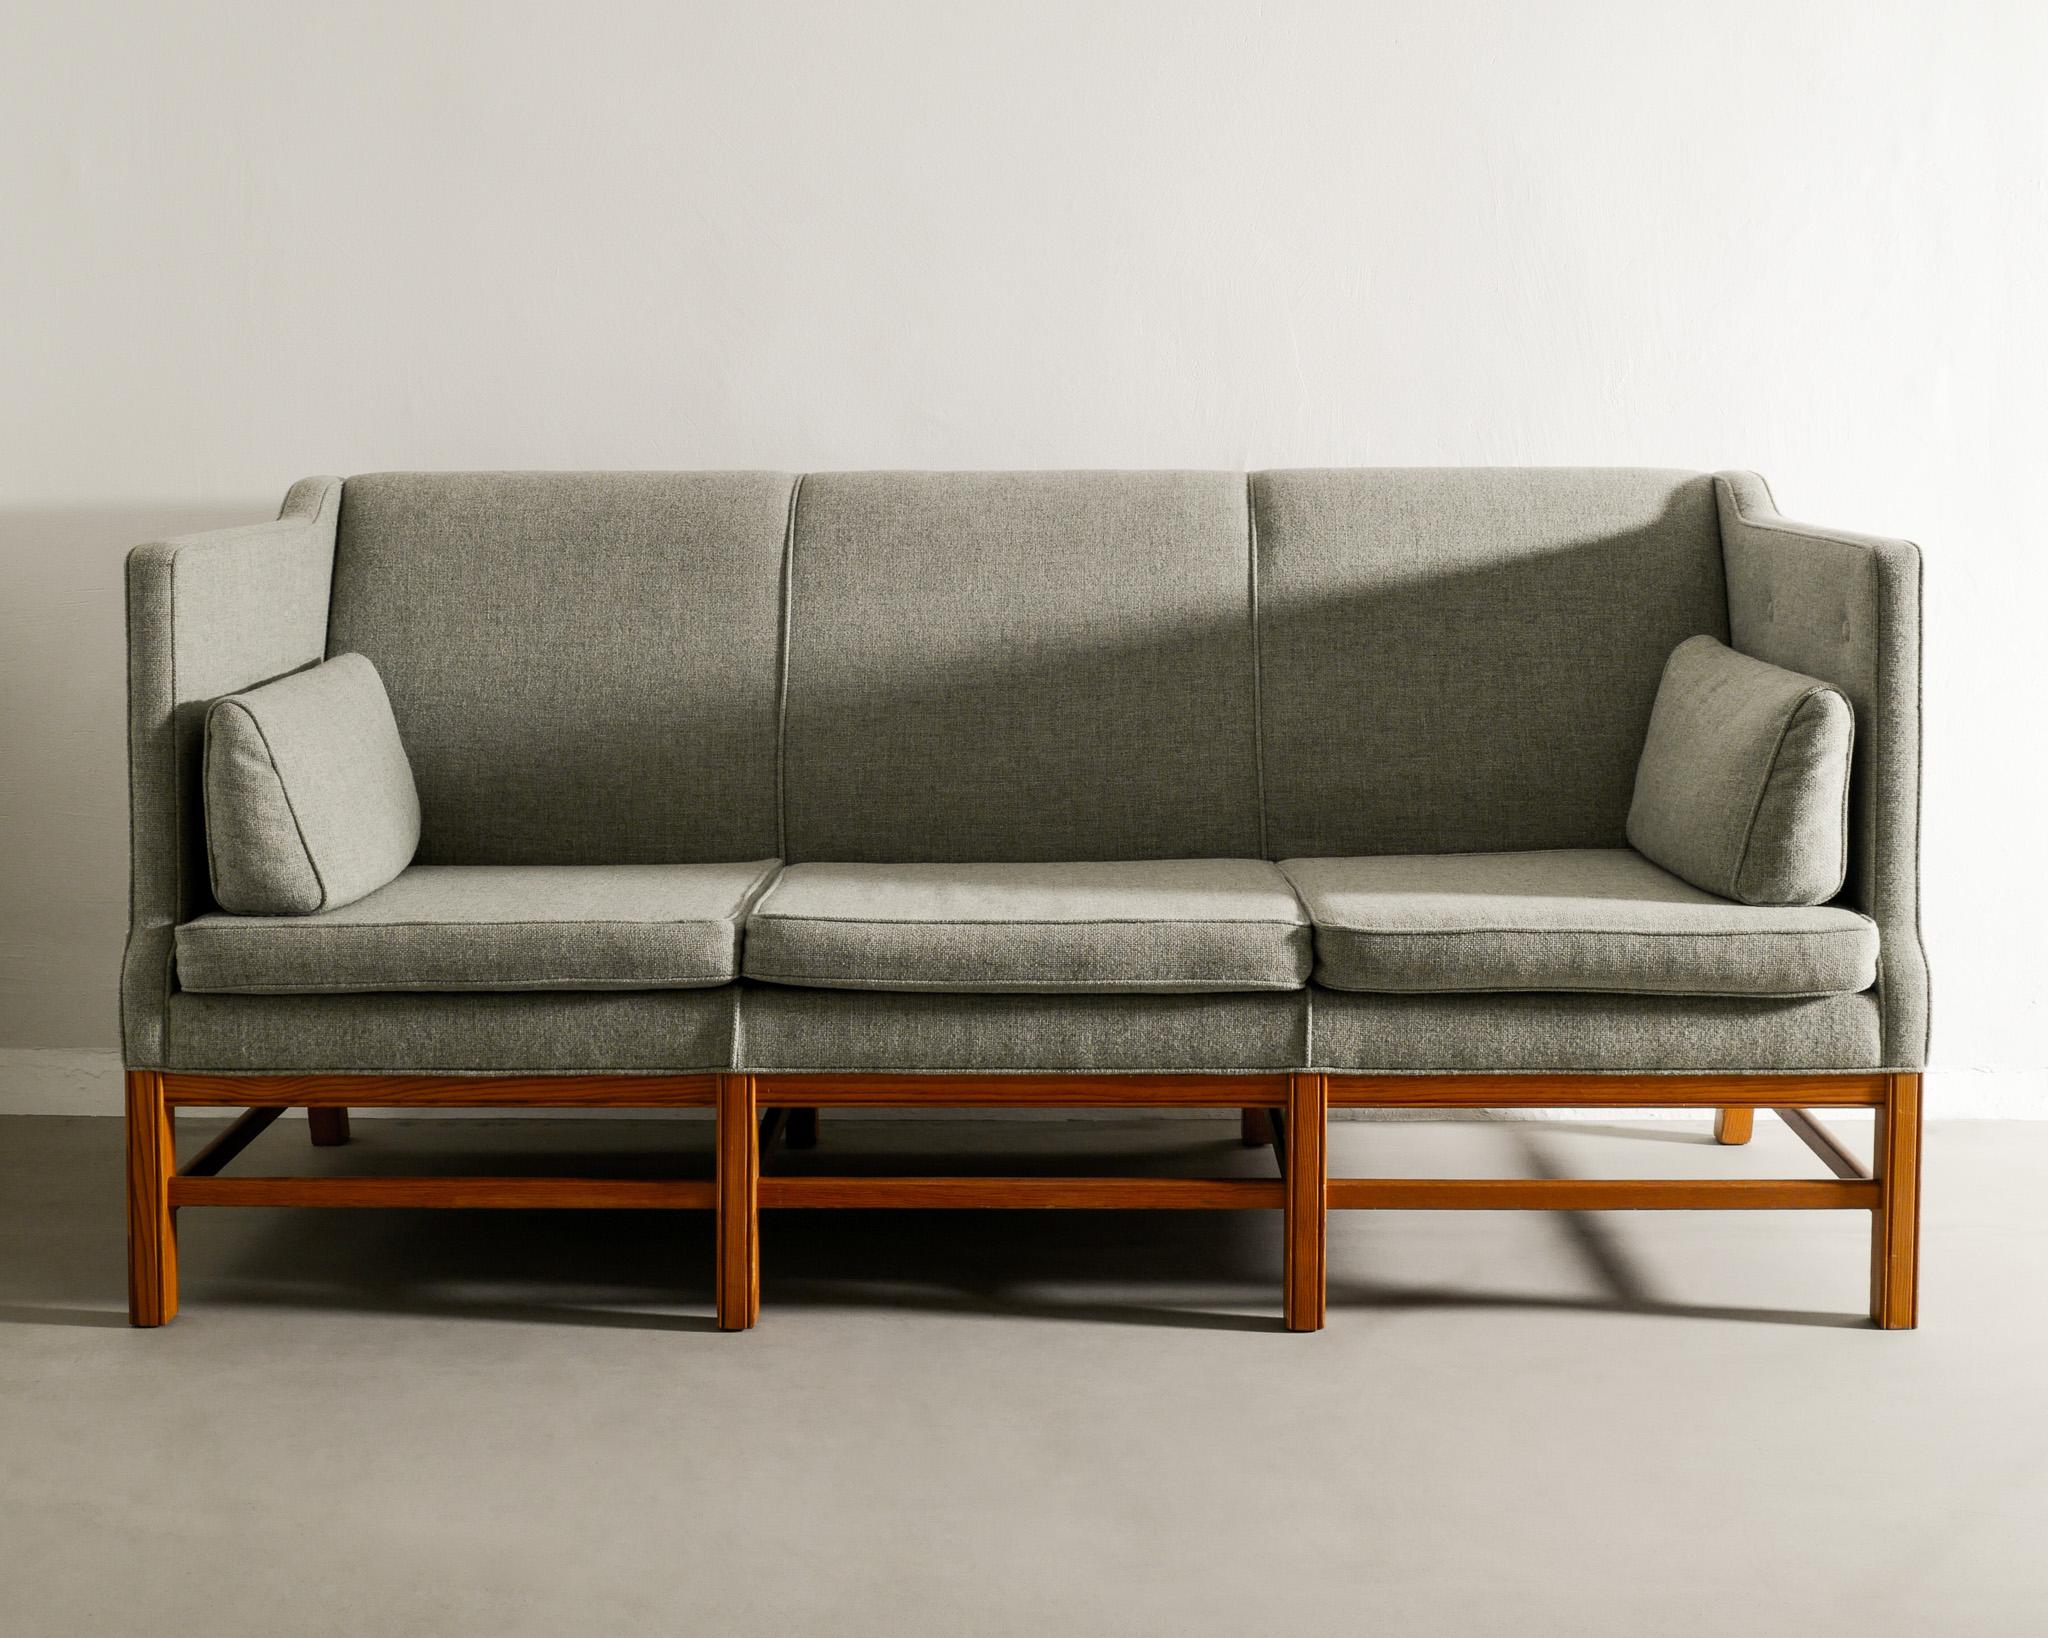 Rare canapé trois places en pin du milieu du siècle dans le style de Kaare Klint, produit au Danemark dans les années 1960. En très bon état, nouvellement tapissé en tissu de laine vert clair. 

Dimensions : H : 89 cm / 35